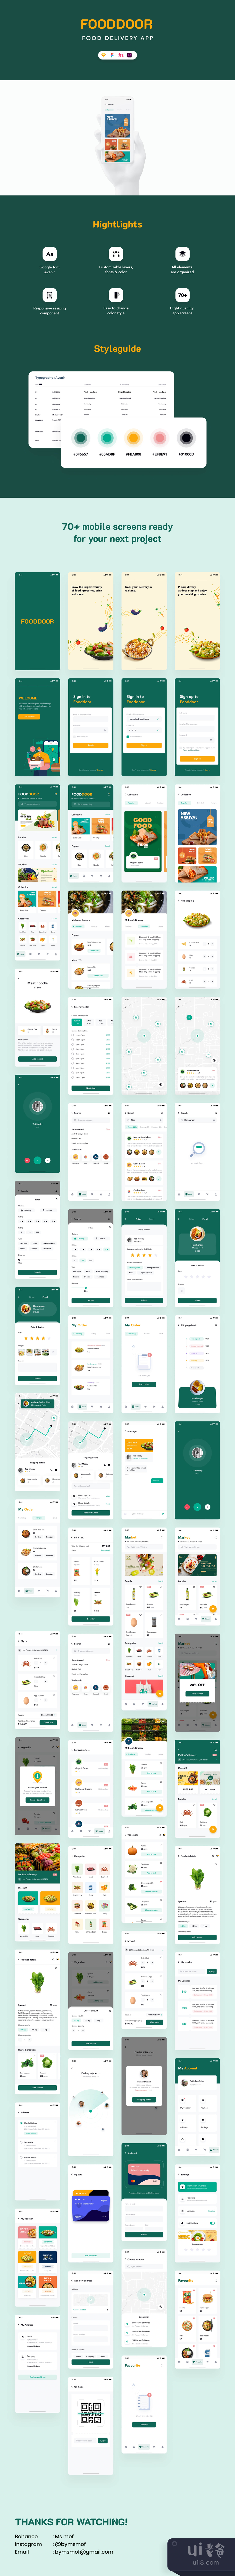 Fooddoor - 食品配送应用 (Fooddoor - Food delivery app)插图1